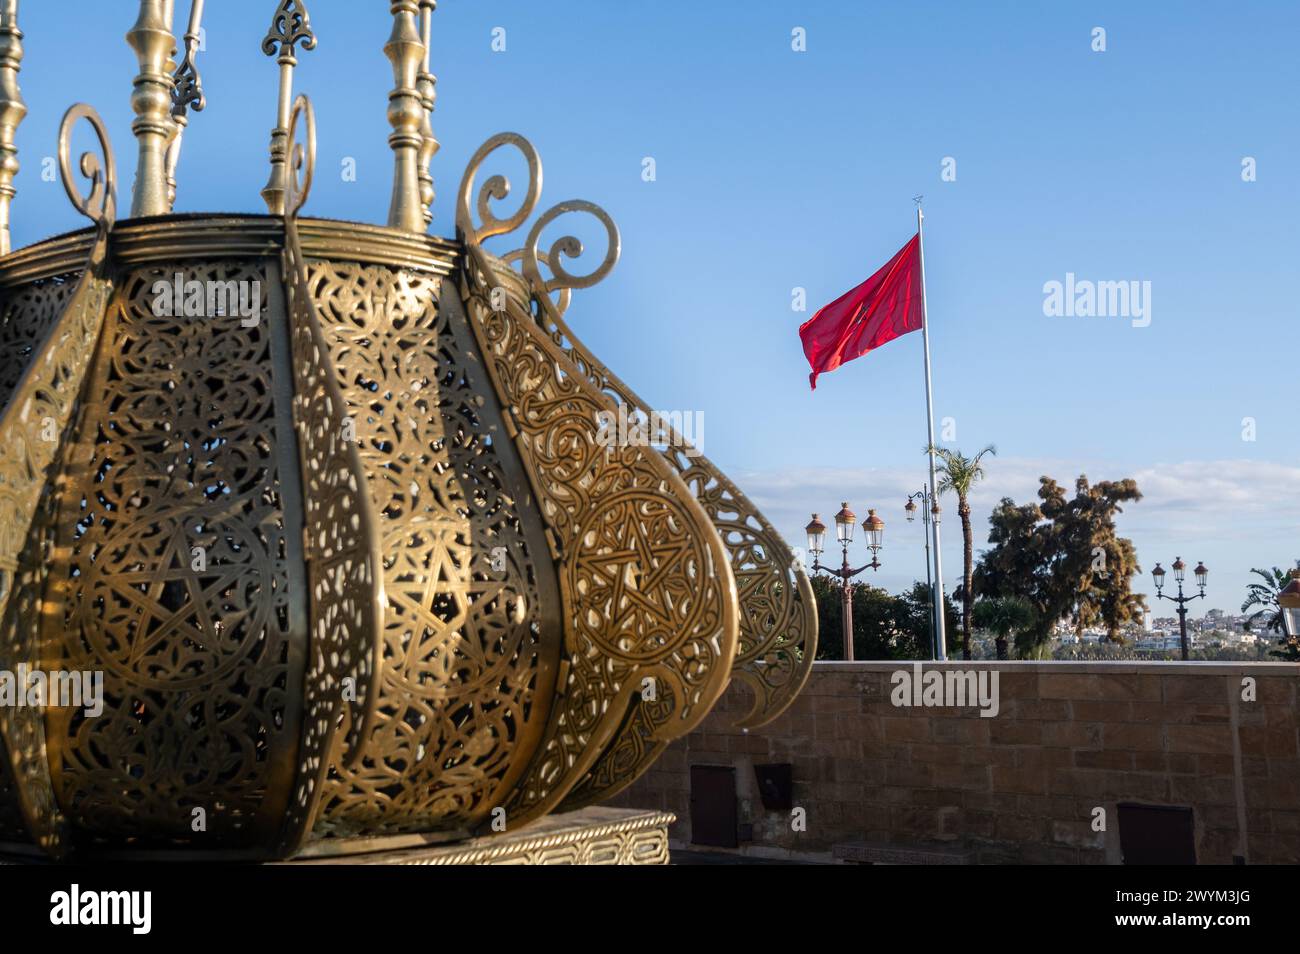 Dettaglio degli elementi decorativi del Mausoleo reale del complesso di Mohammed V a Rabat, in Marocco, con la bandiera marocchina che sventolava sullo sfondo su una Foto Stock